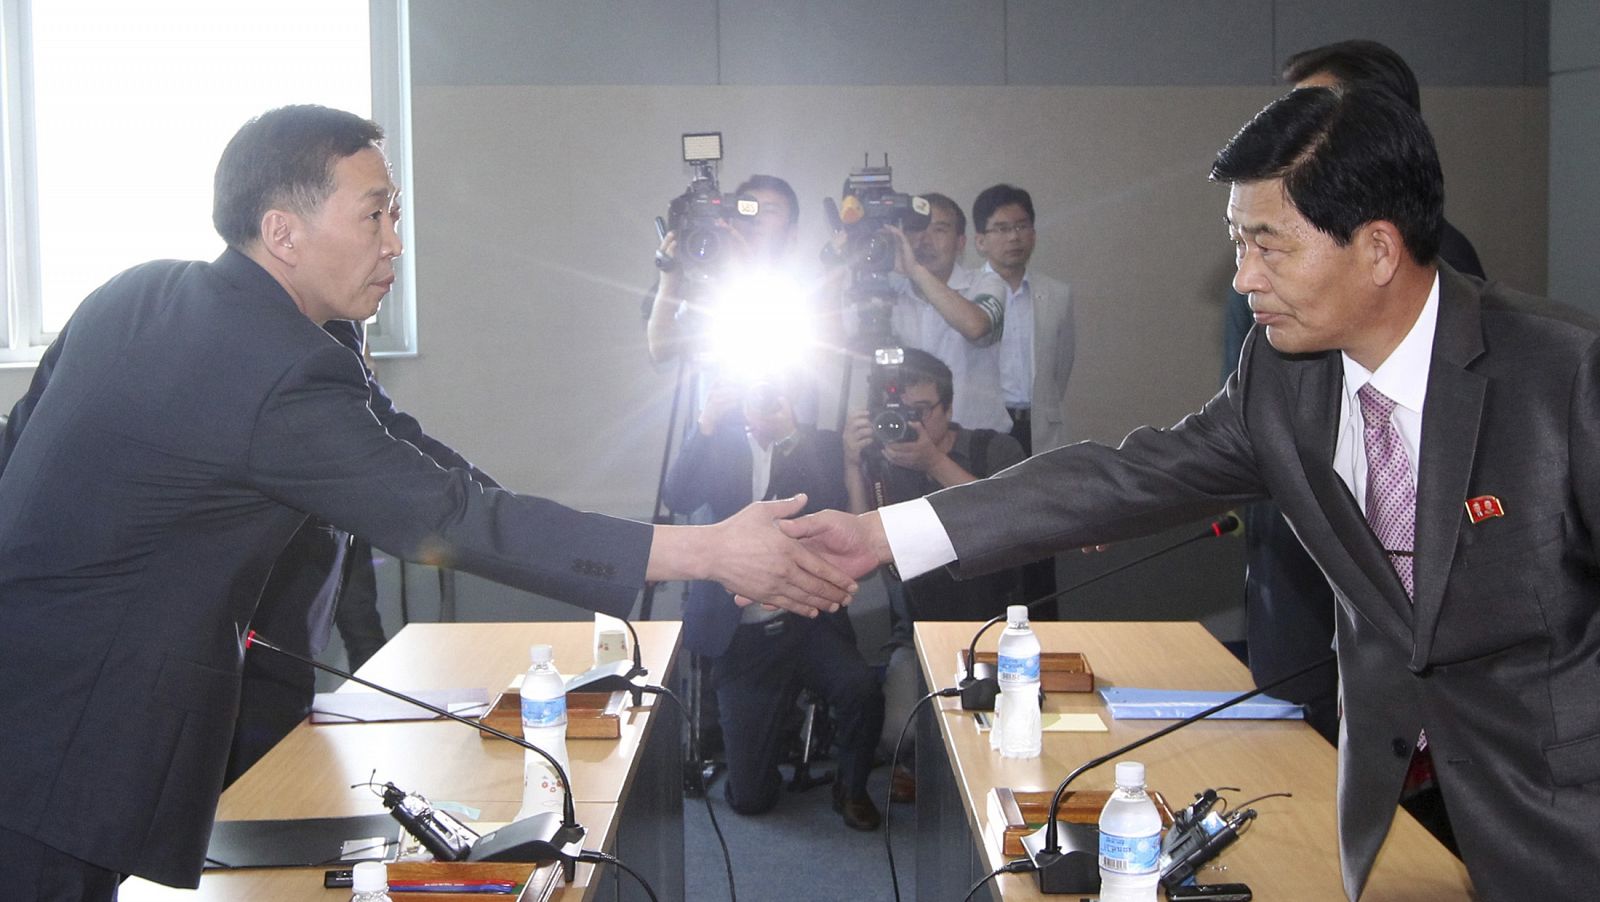 El representante de Corea del Sur, Kim Ki-woong, y el de Corea del Norte, Park Chol-su, cierran con un apretón de manos el acuerdo para reabrir Kaesong.